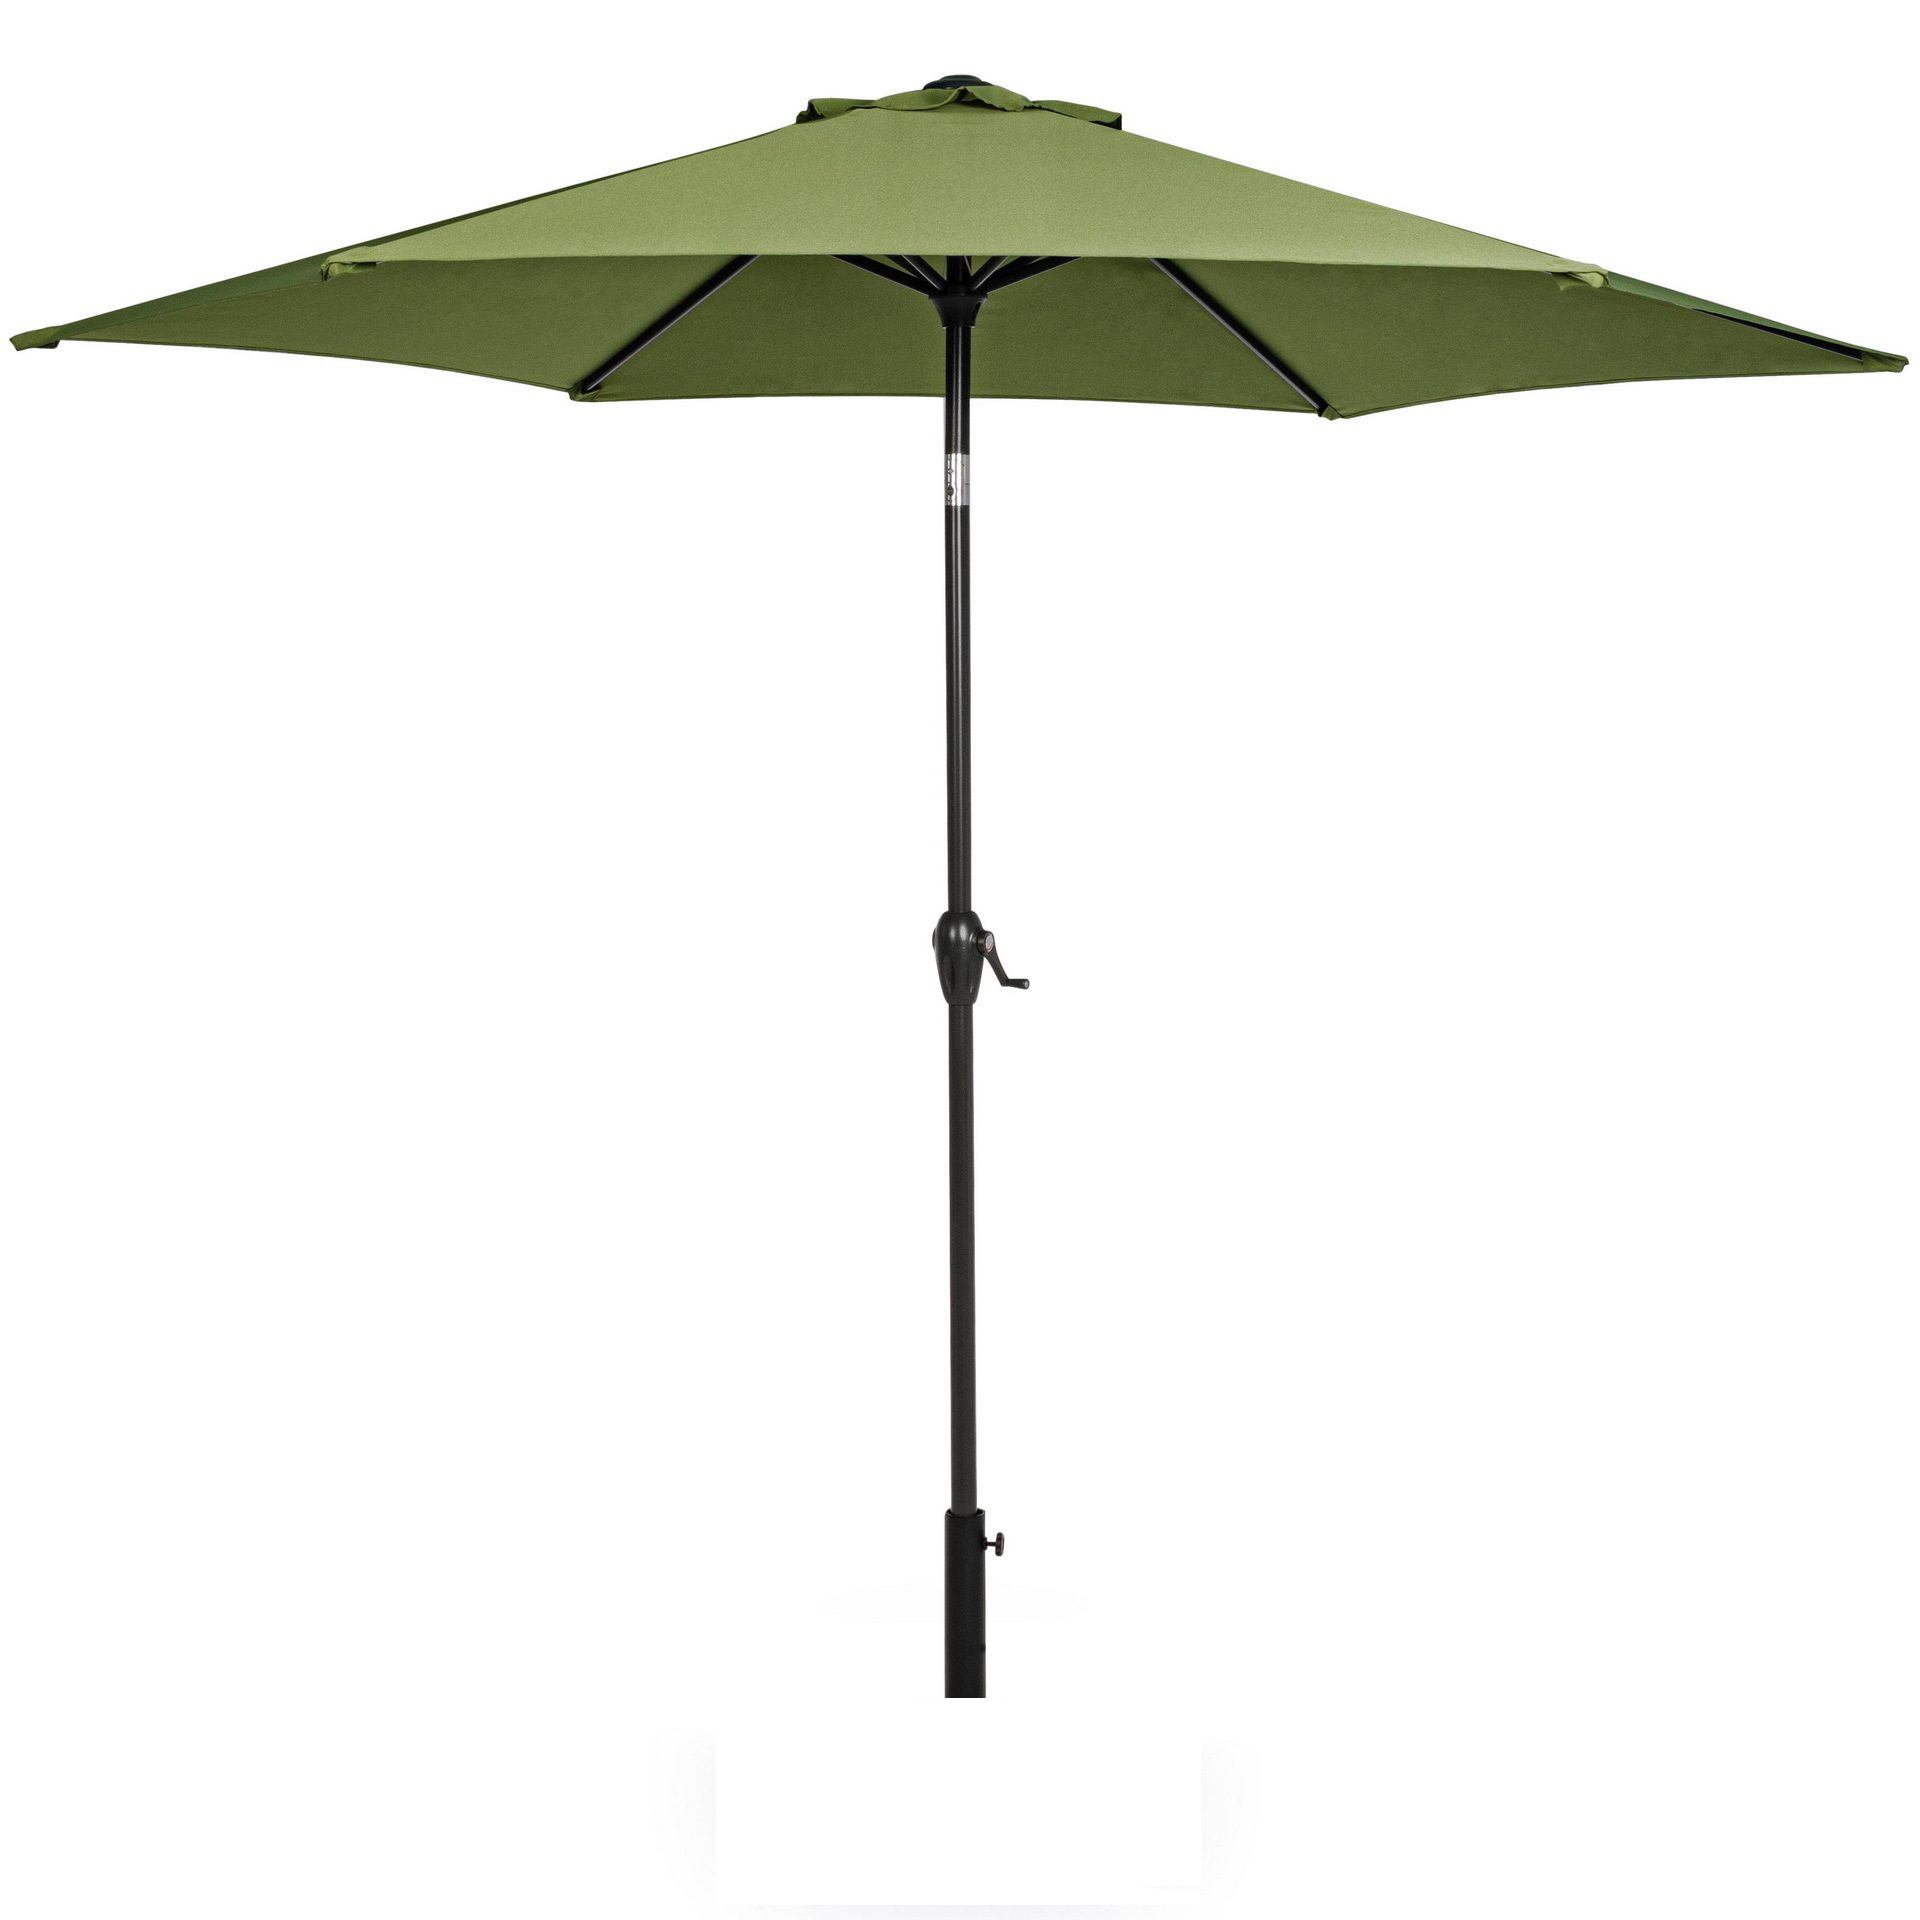 Земля зонтика. Зонт садовый Полар 2.9. Зонт садовый giardino Club 3м утяжелитель. Пляжный зонт 300см. Парасоль зонт от солнца.